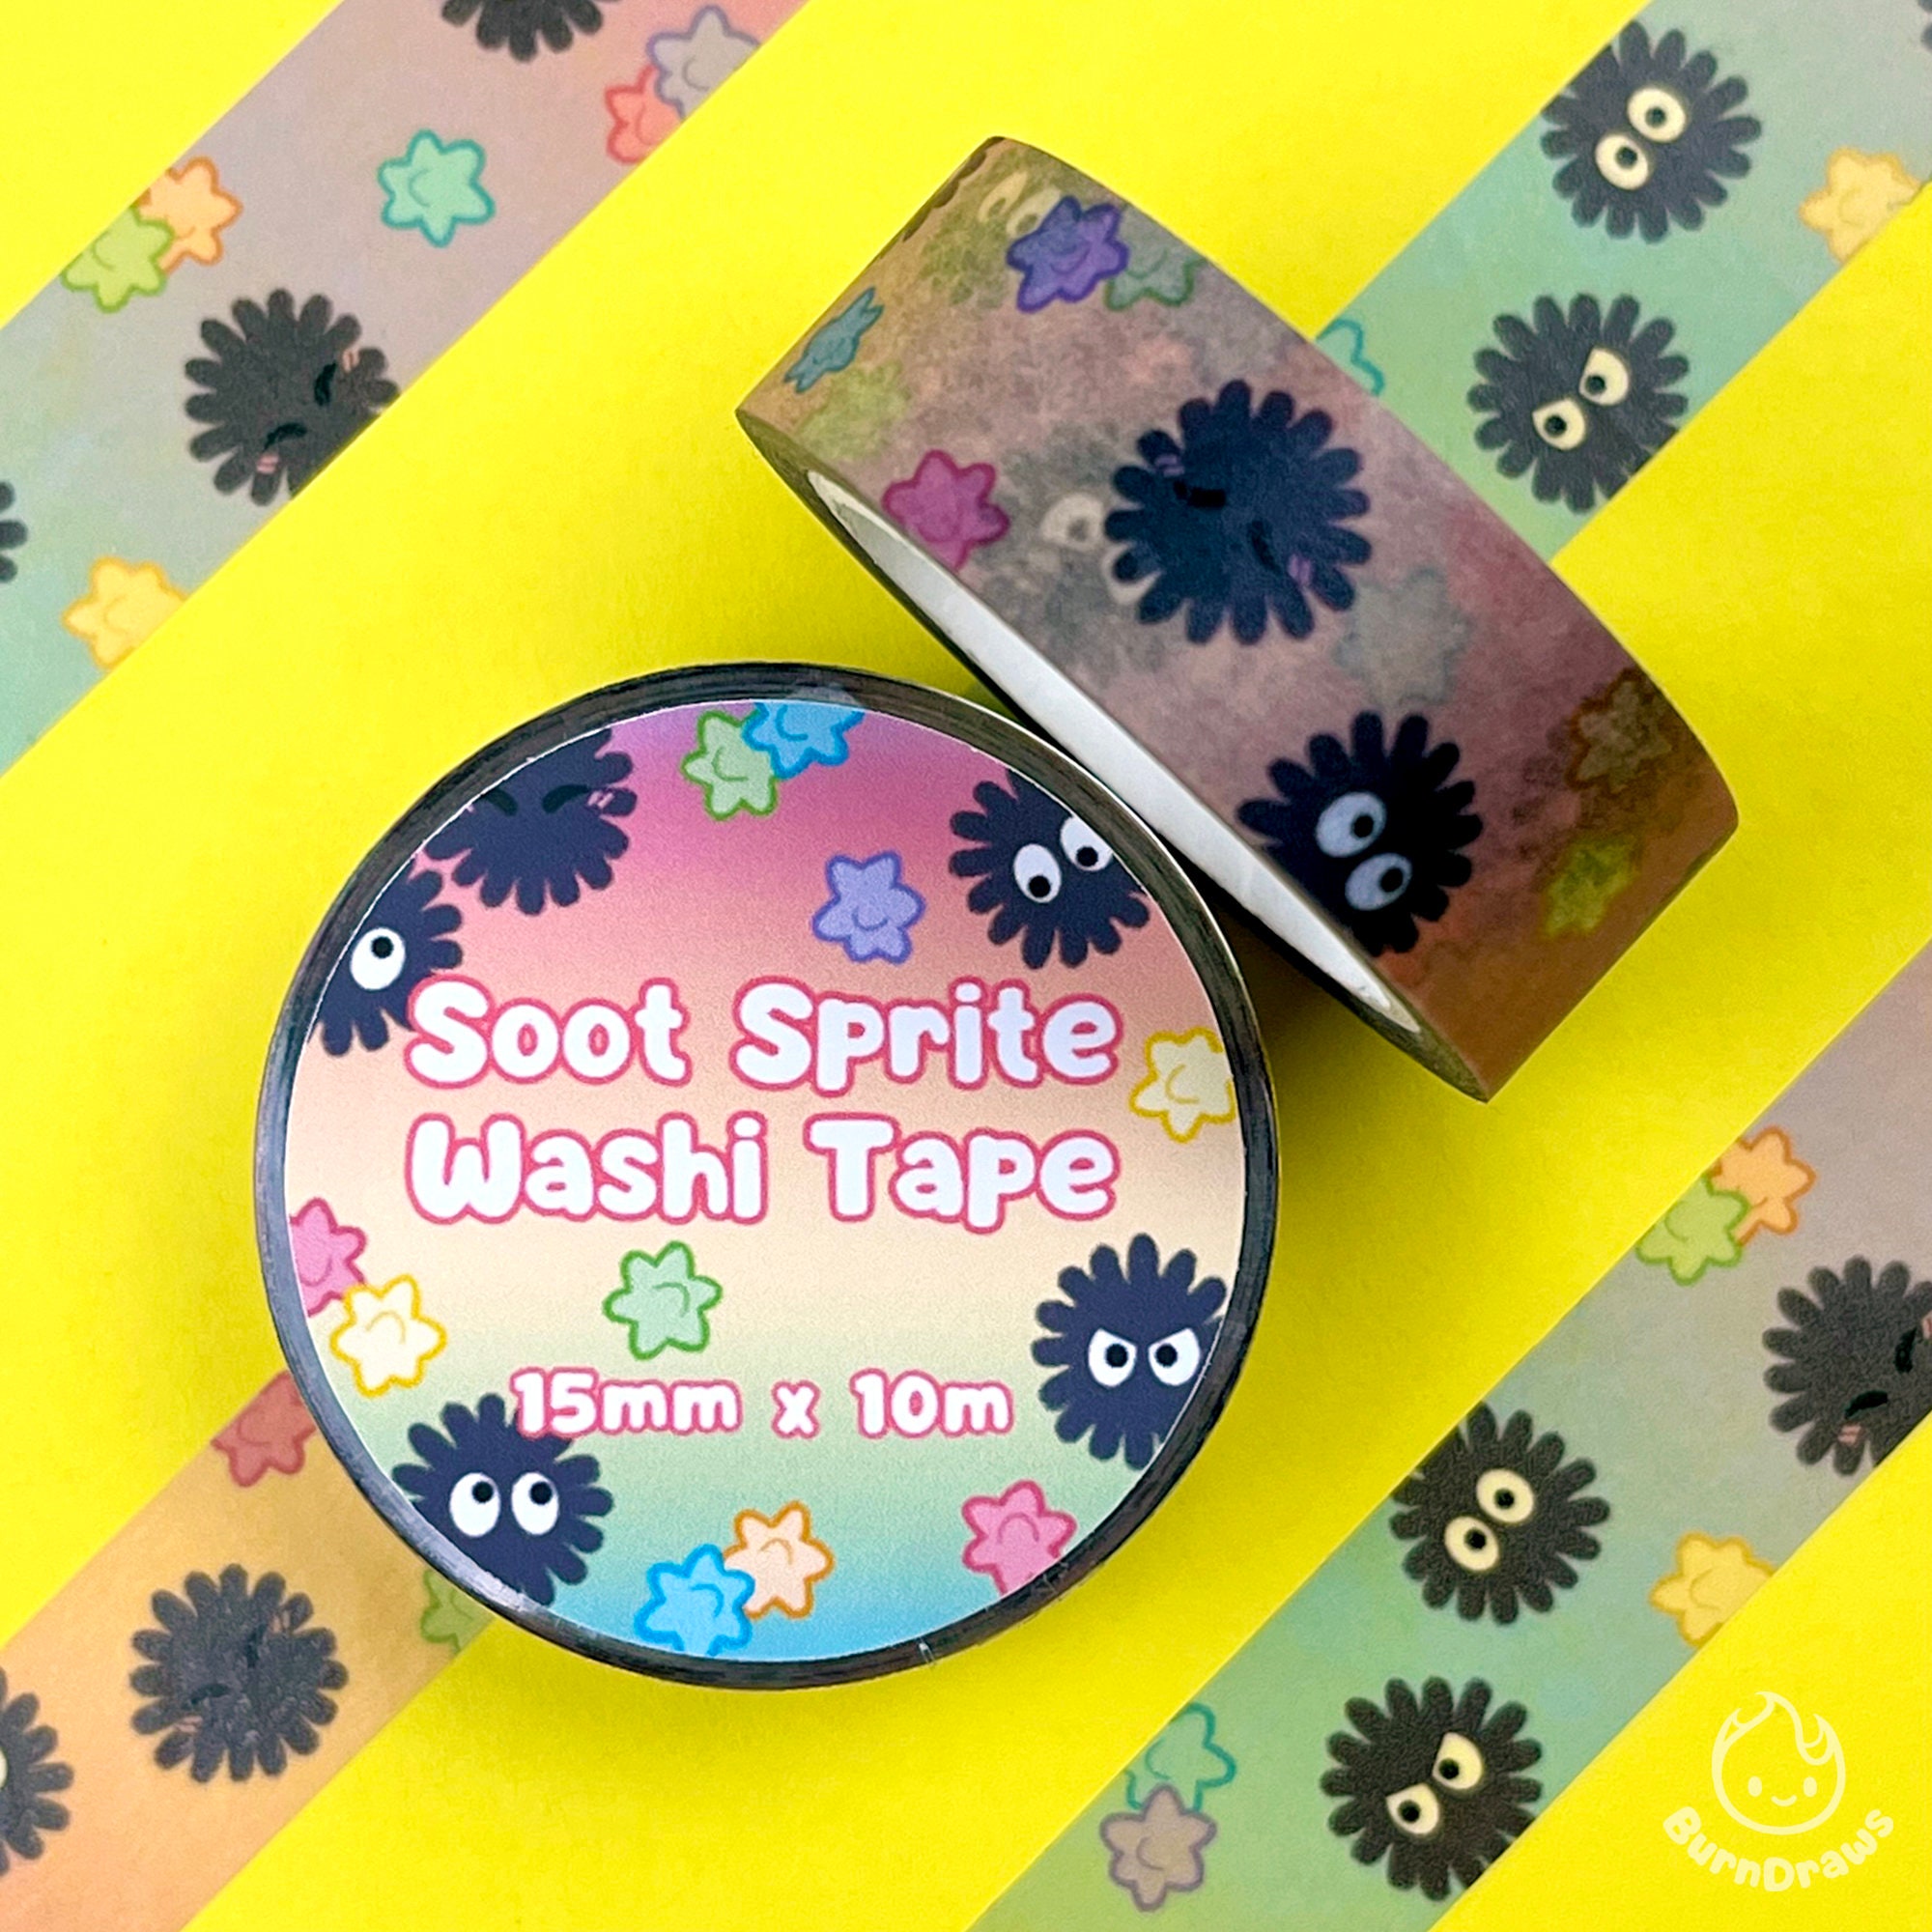 Sugar Sprite Washi Tape